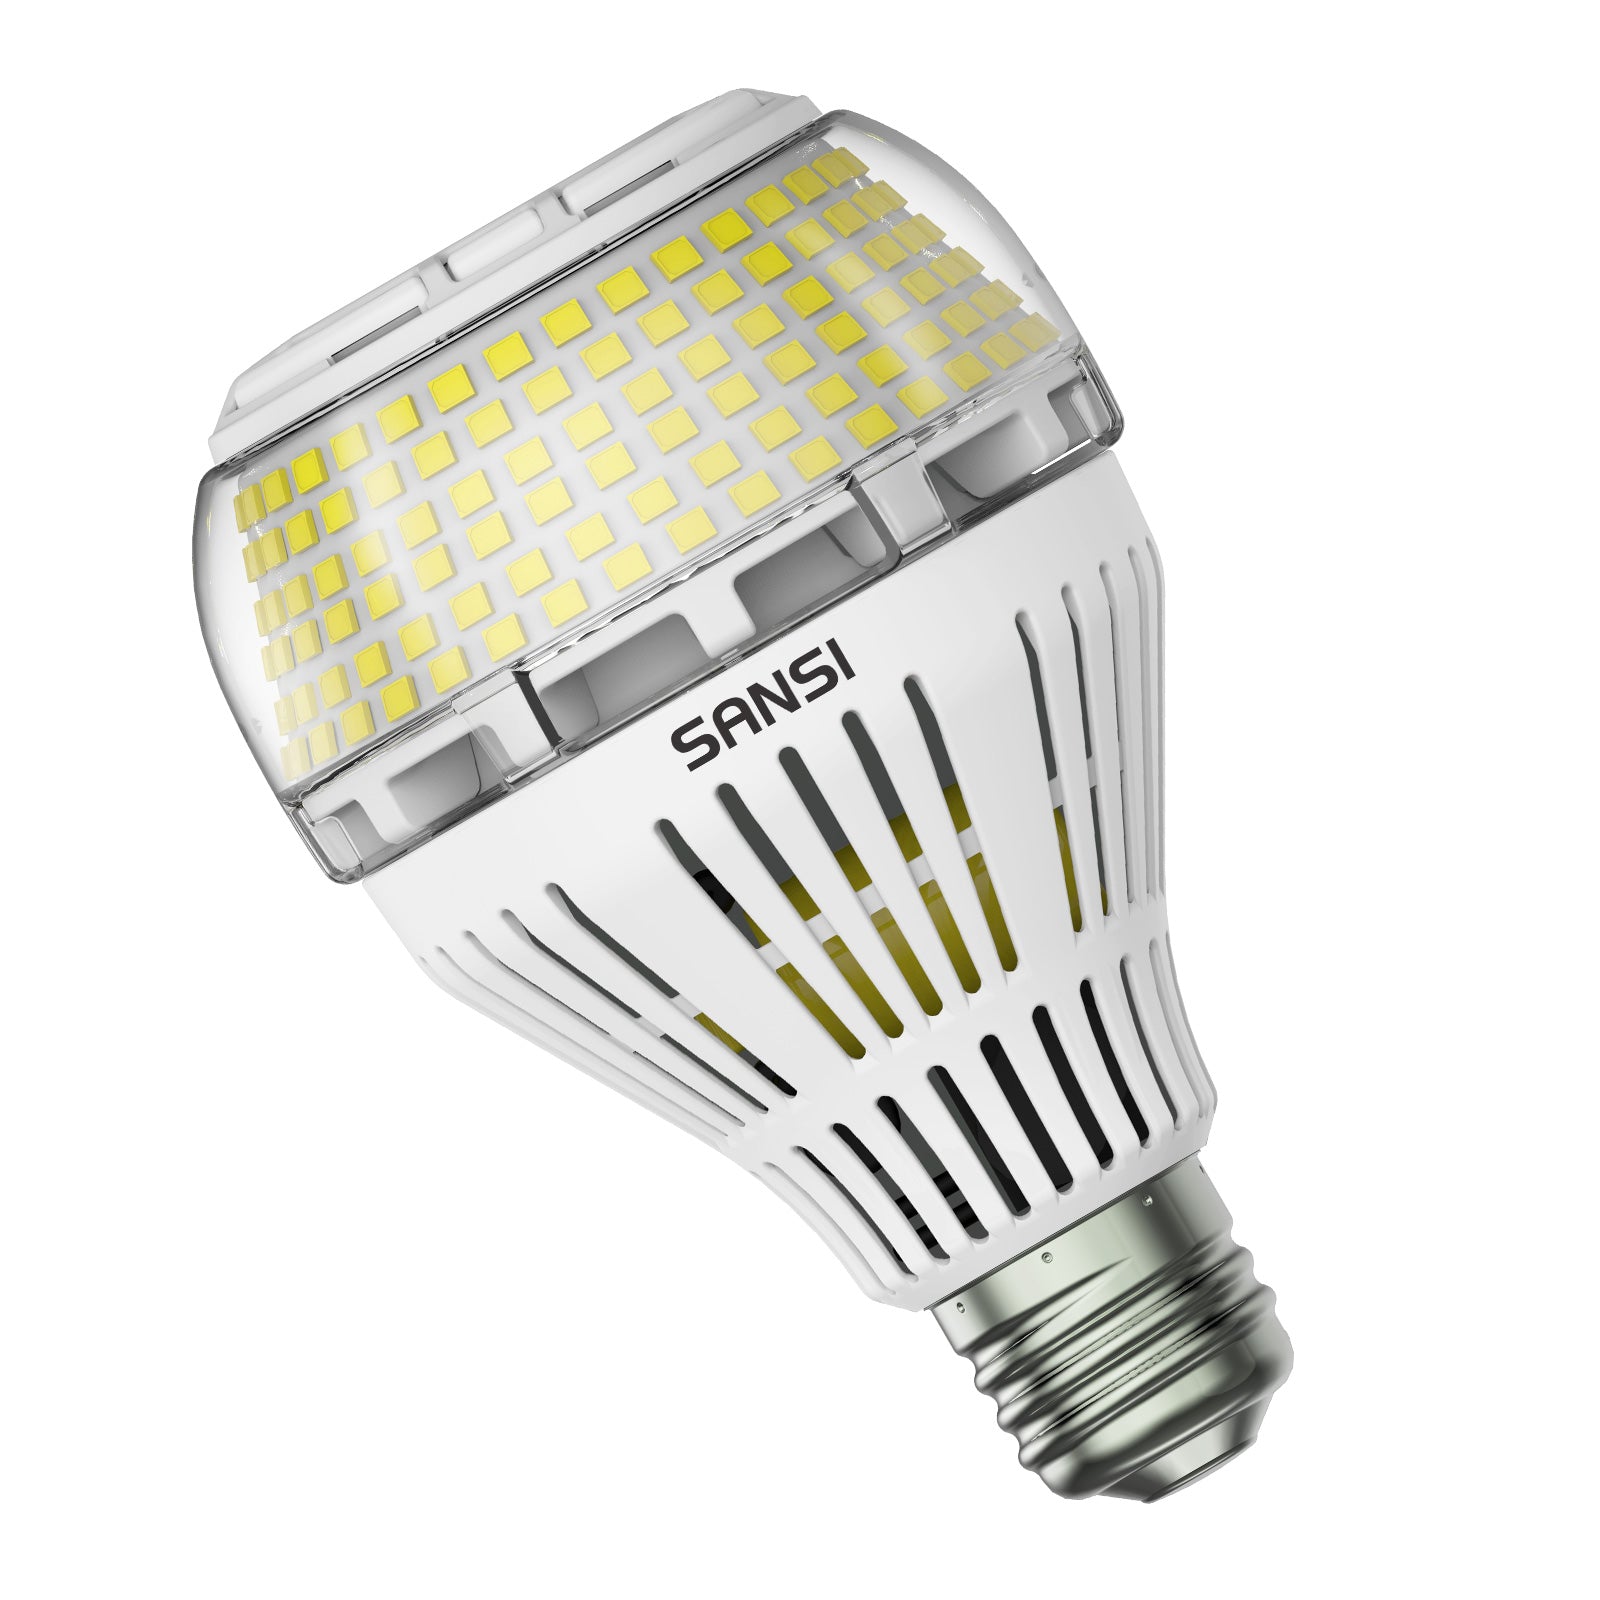 A21 30W LED Light Bulb.